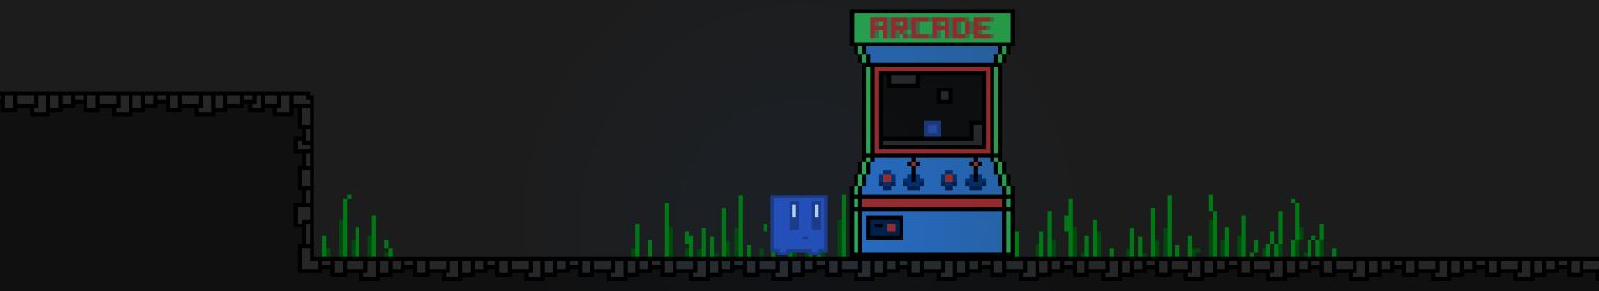 The Arcade Explorer